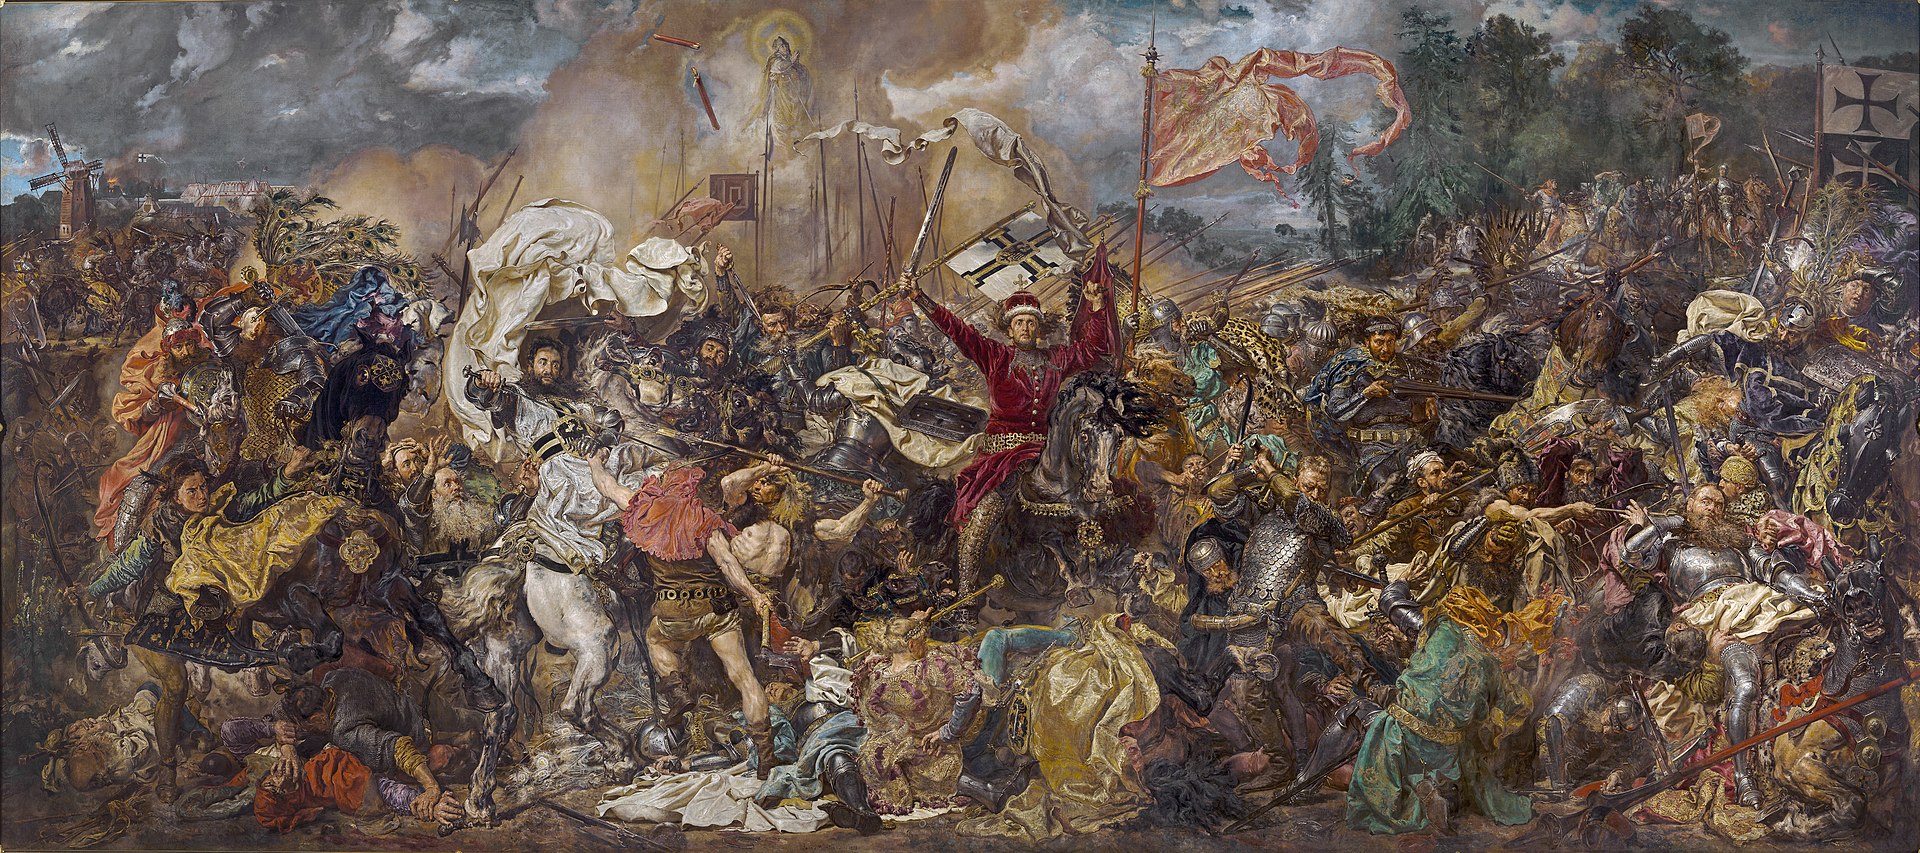 『グルンヴァルトの戦い』ヤン・マテイコ画 (1878年)